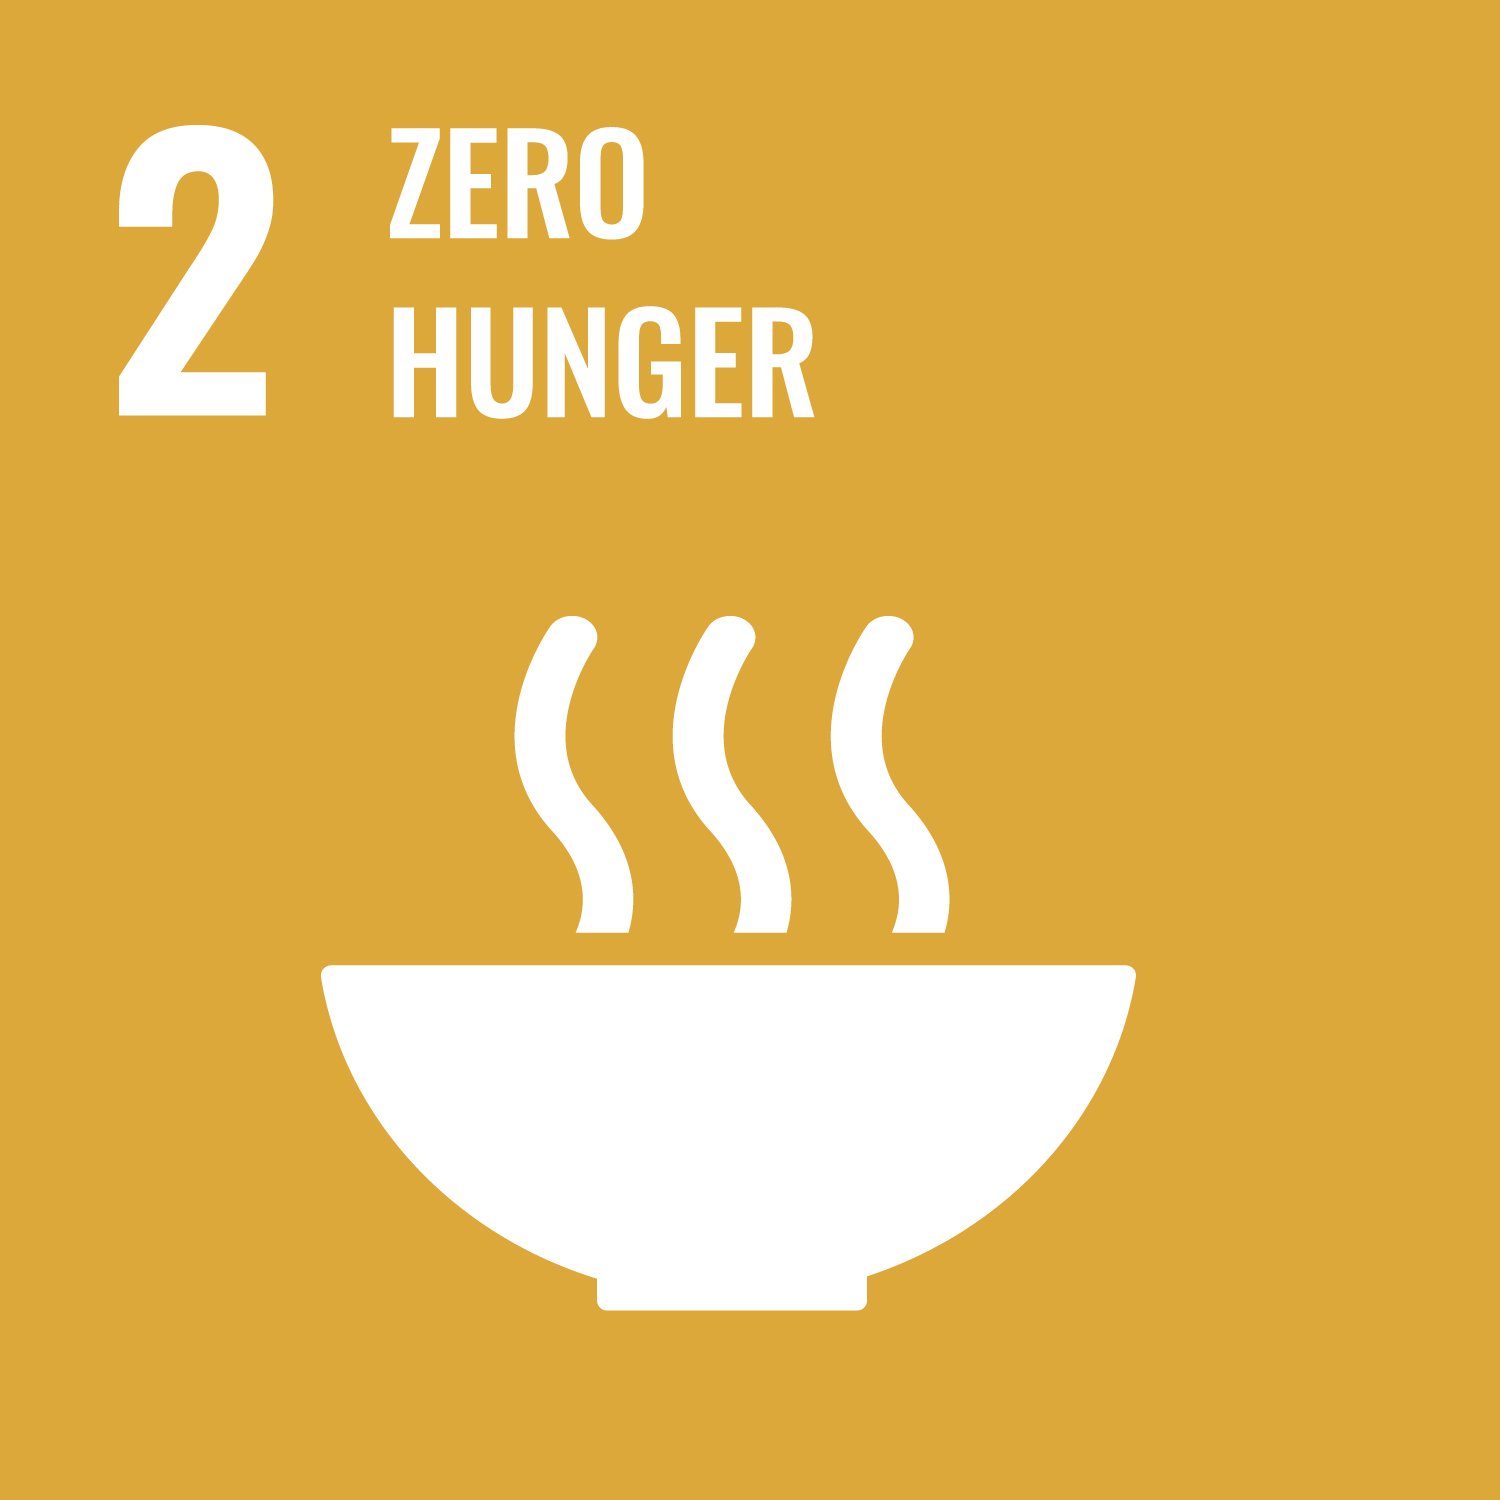 02. Zero hunger